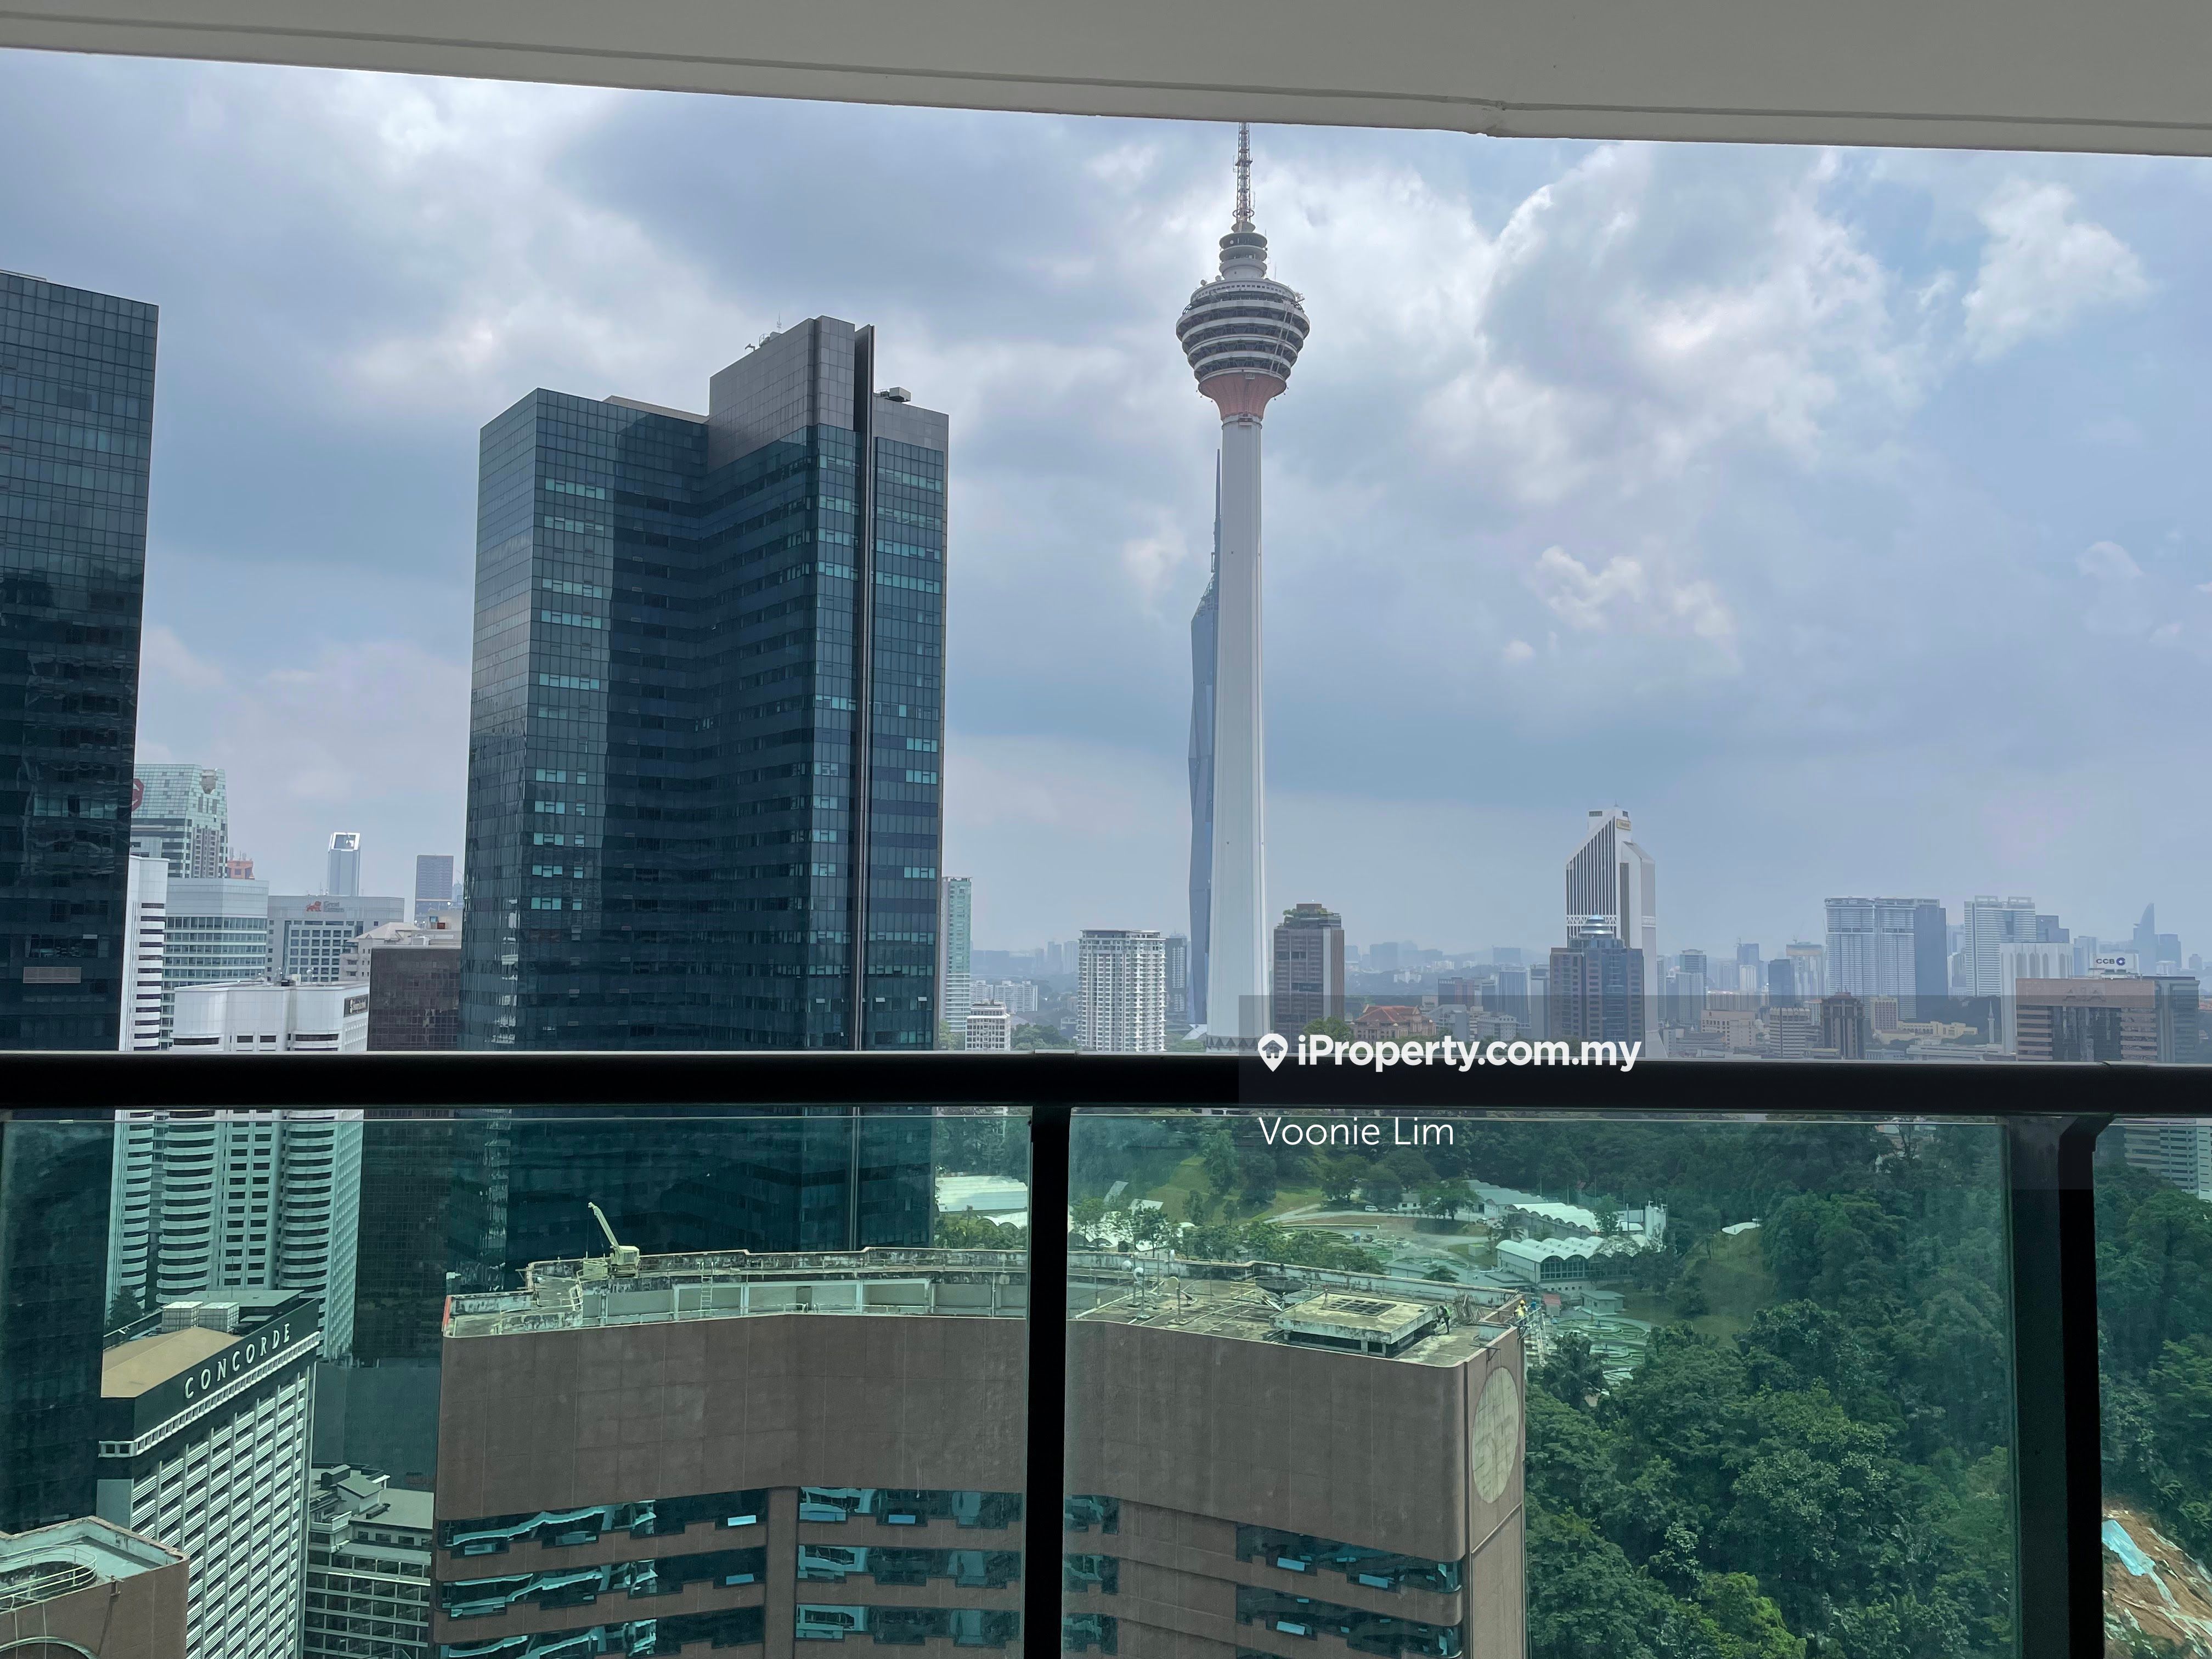 Cendana Condominium 5+2 bedrooms for rent in KLCC, Kuala Lumpur ...